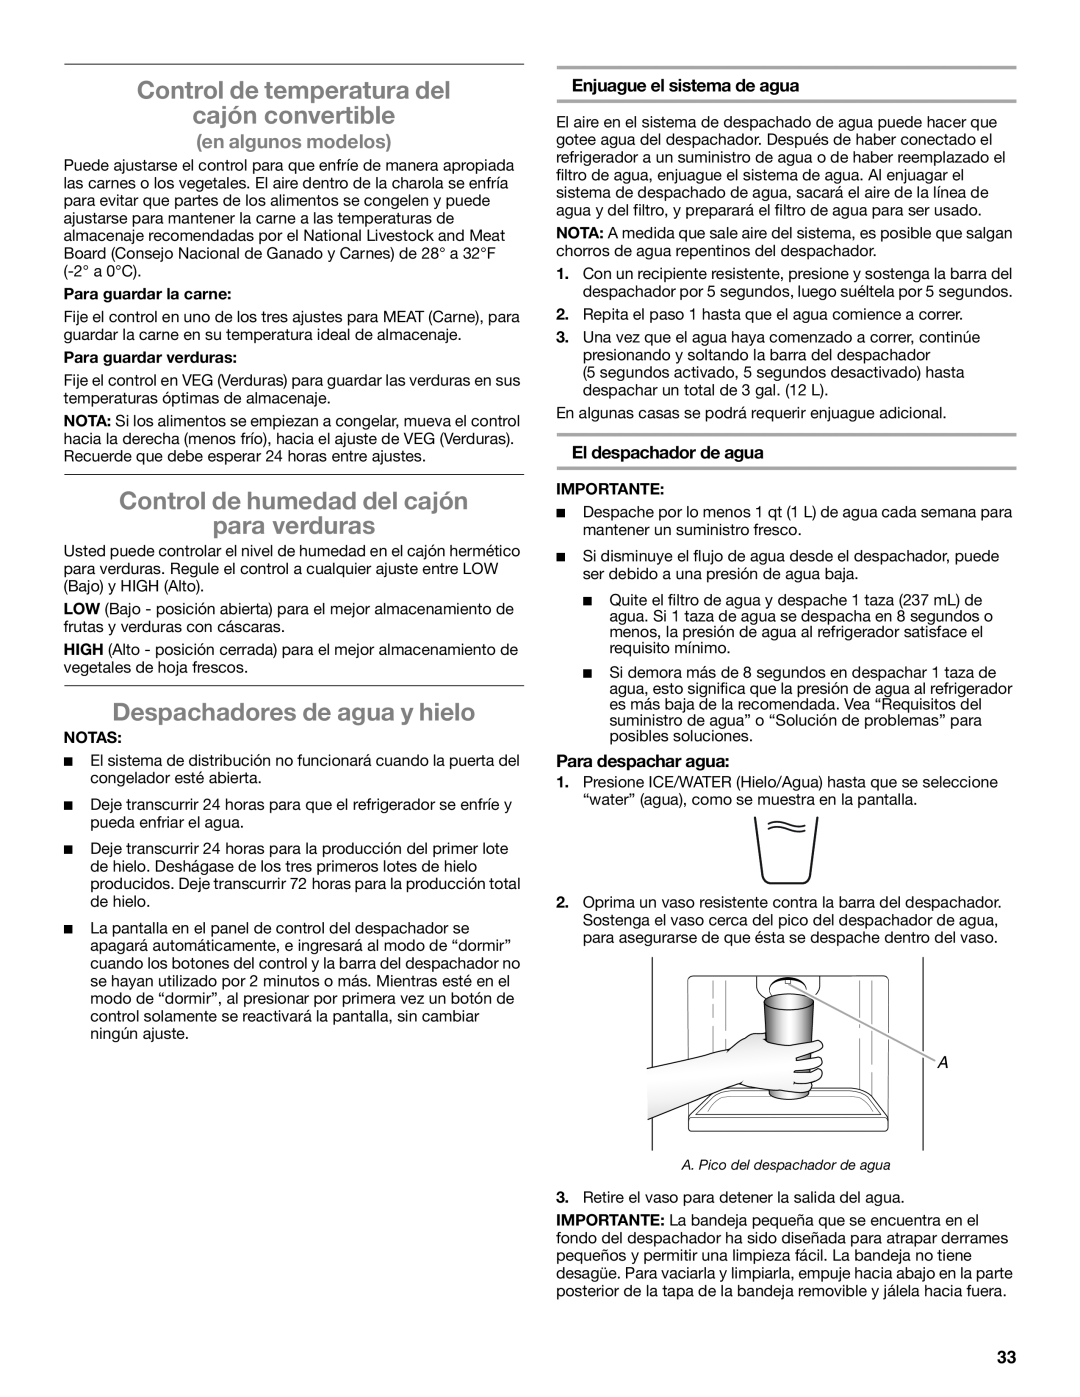 Whirlpool ED2KHAXVB Control de temperatura del cajón convertible, Control de humedad del cajón para verduras 